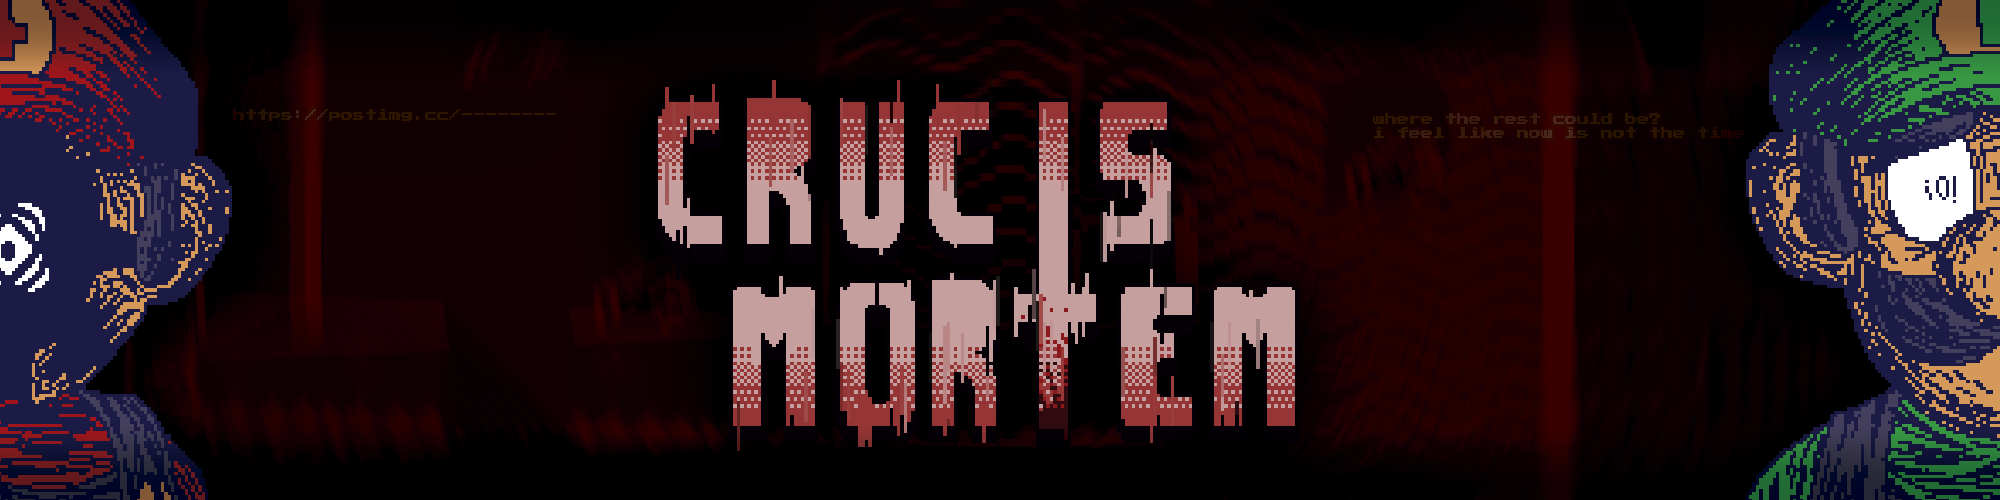 Crucis Mortem  - Mario Horror Game (Demo)